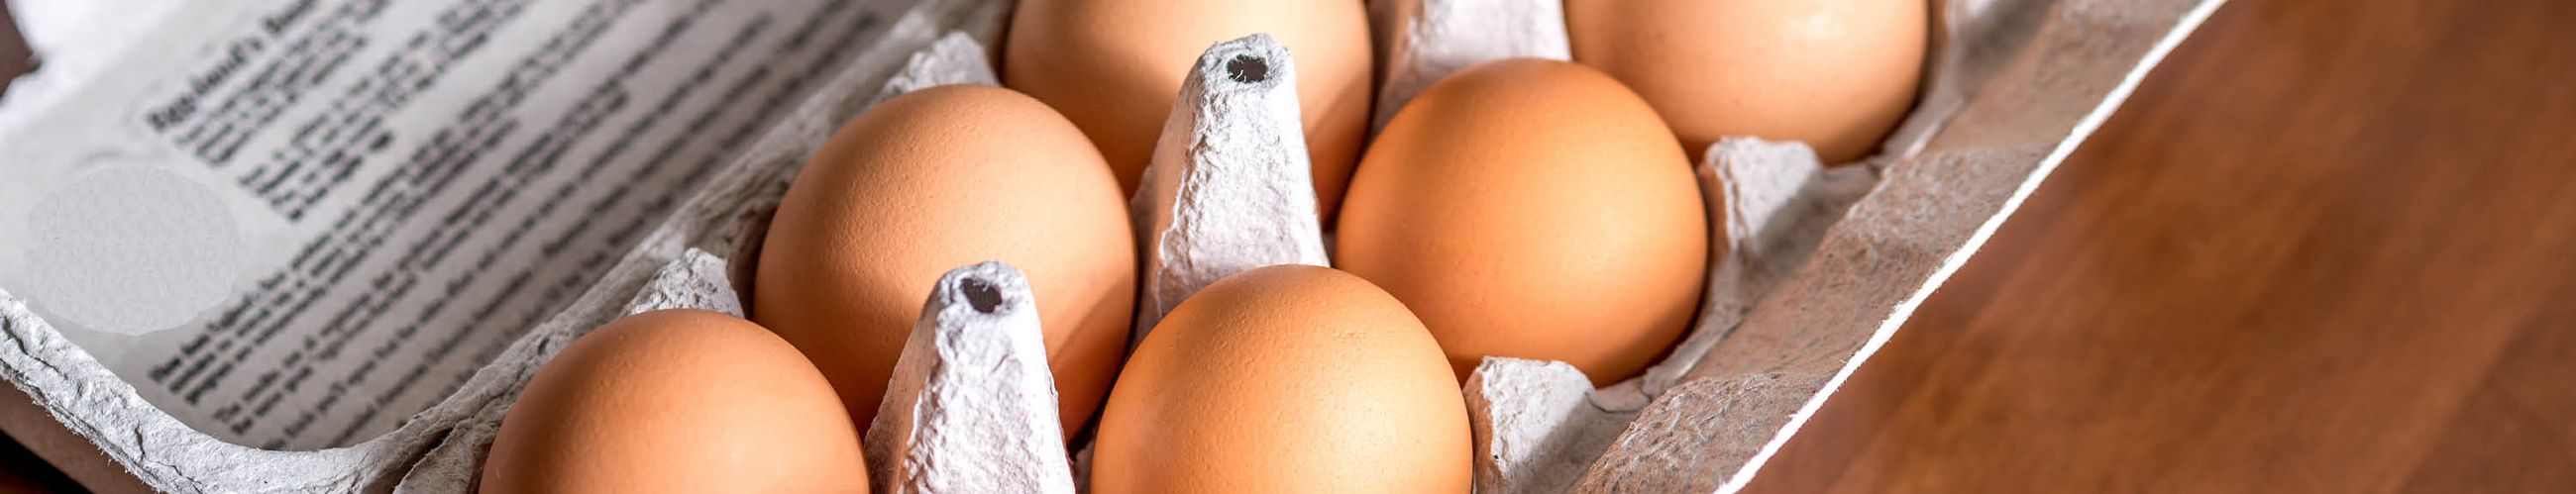 Sechs Eier in einem offenen Eierkarton liegen auf einem Holzbrett.